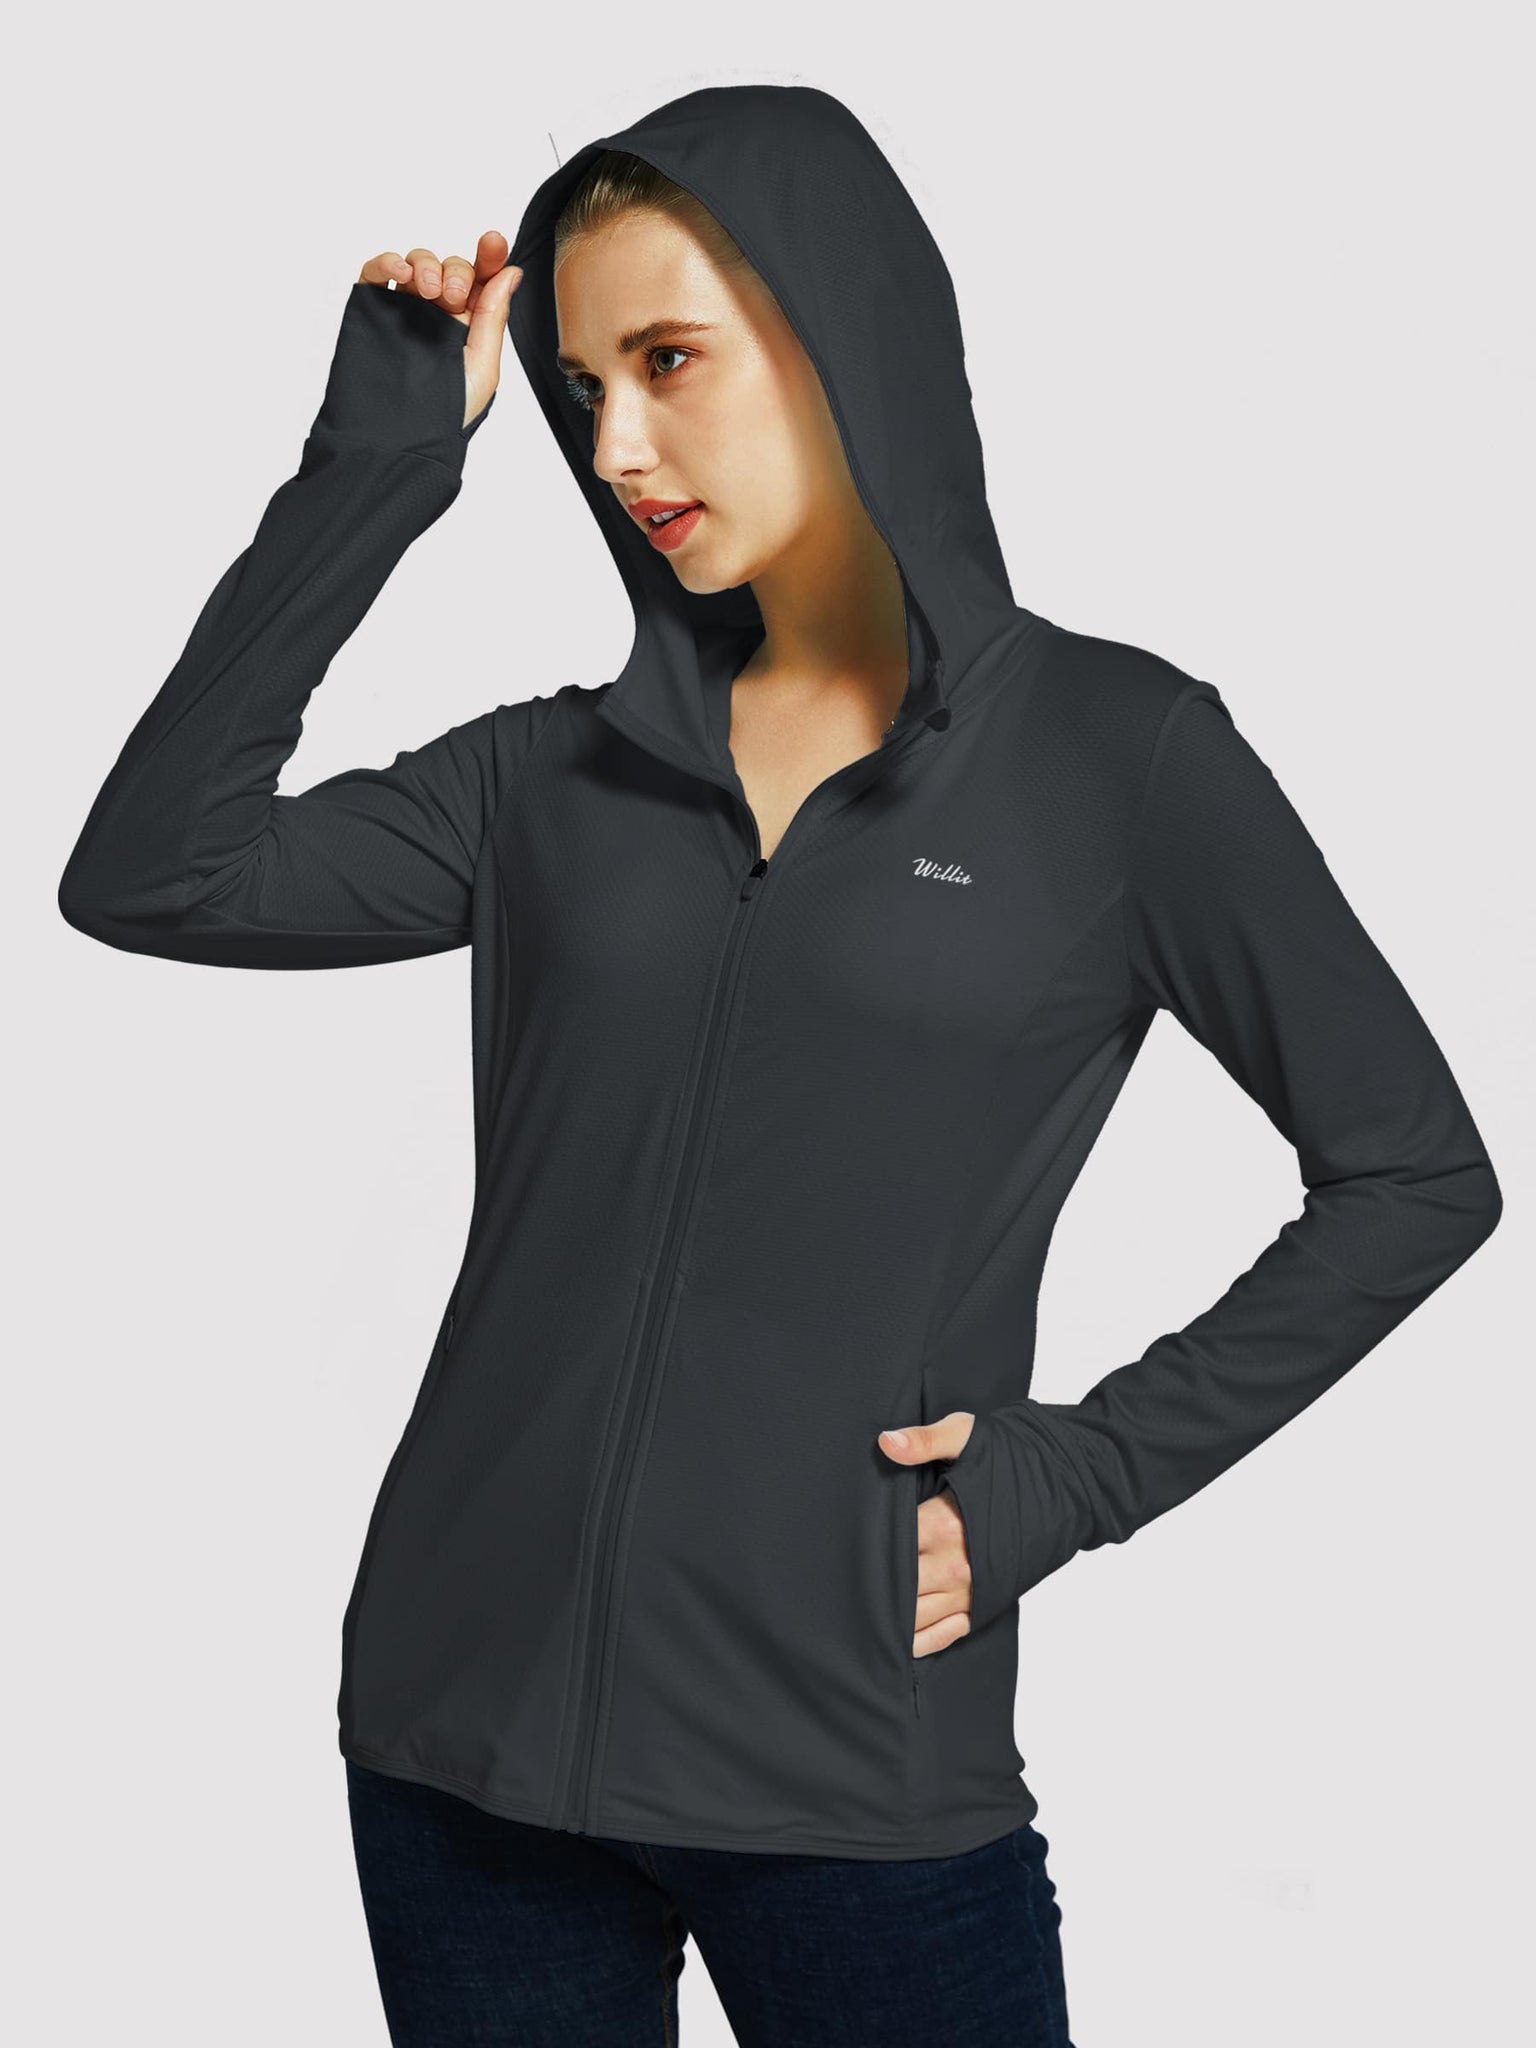 Willit Women's Outdoor Sun Protection Jacket Full Zip_Black_model1